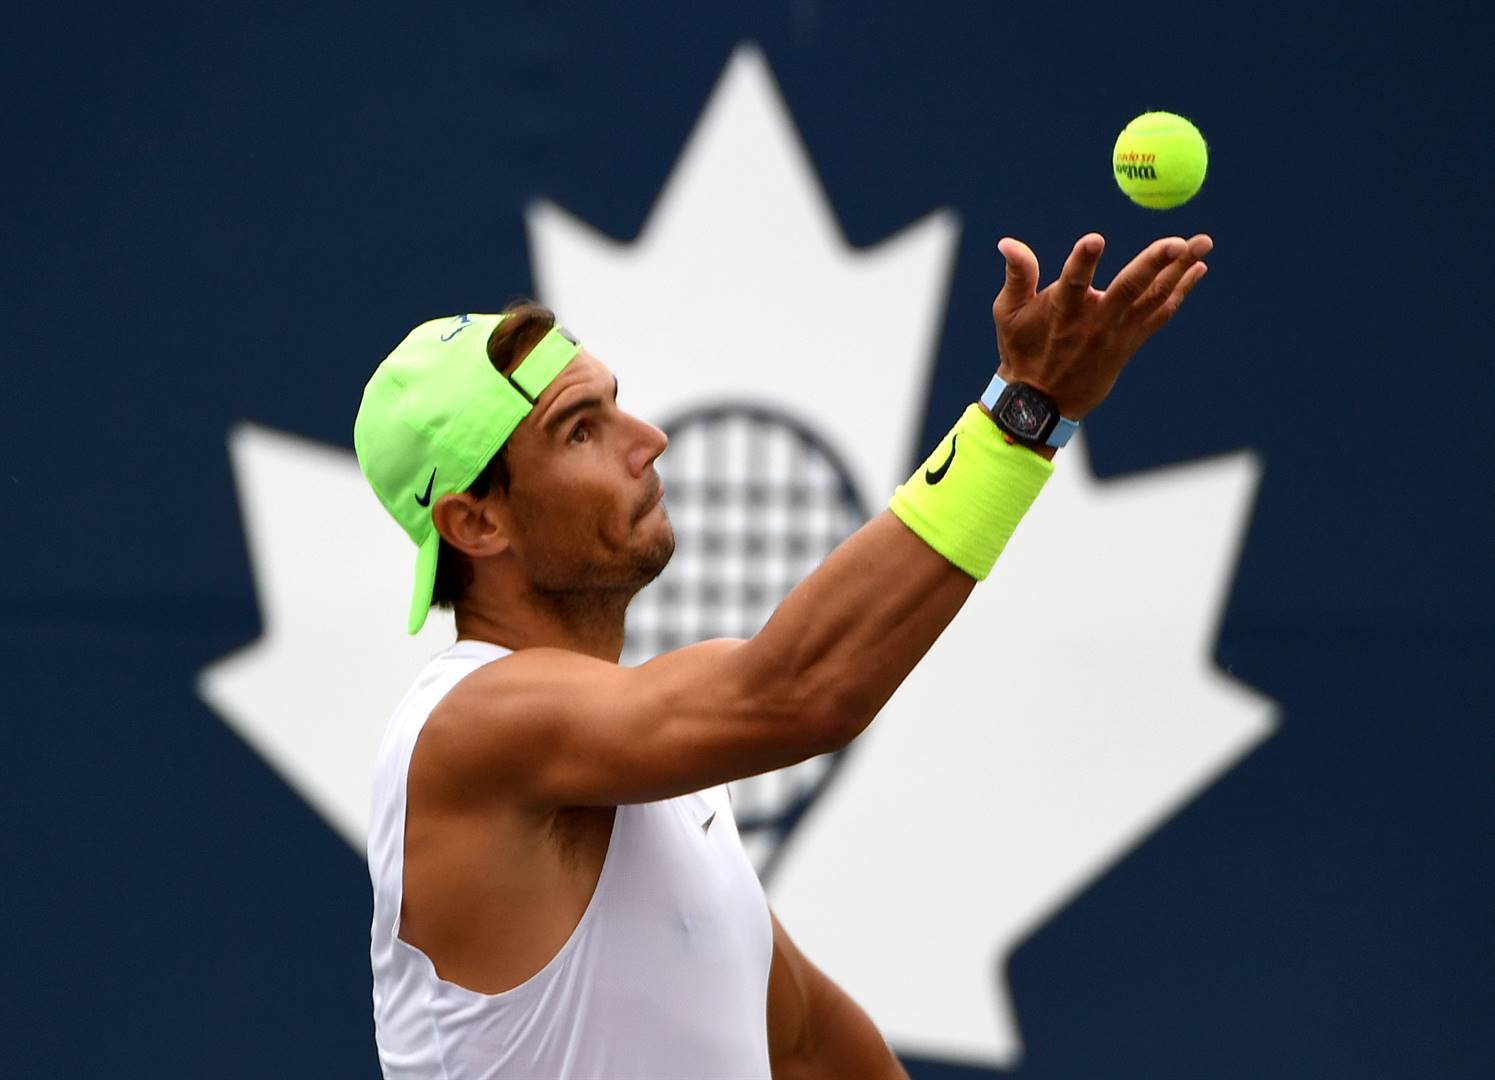 Rafa Nadal op die oefenbaan in Toronto. Knaende pyn in sy linkervoet het hom laat besluit om hom eerder aan die Toronto-meesterstoernooi te onttrek.  Foto: USA TODAY Sports